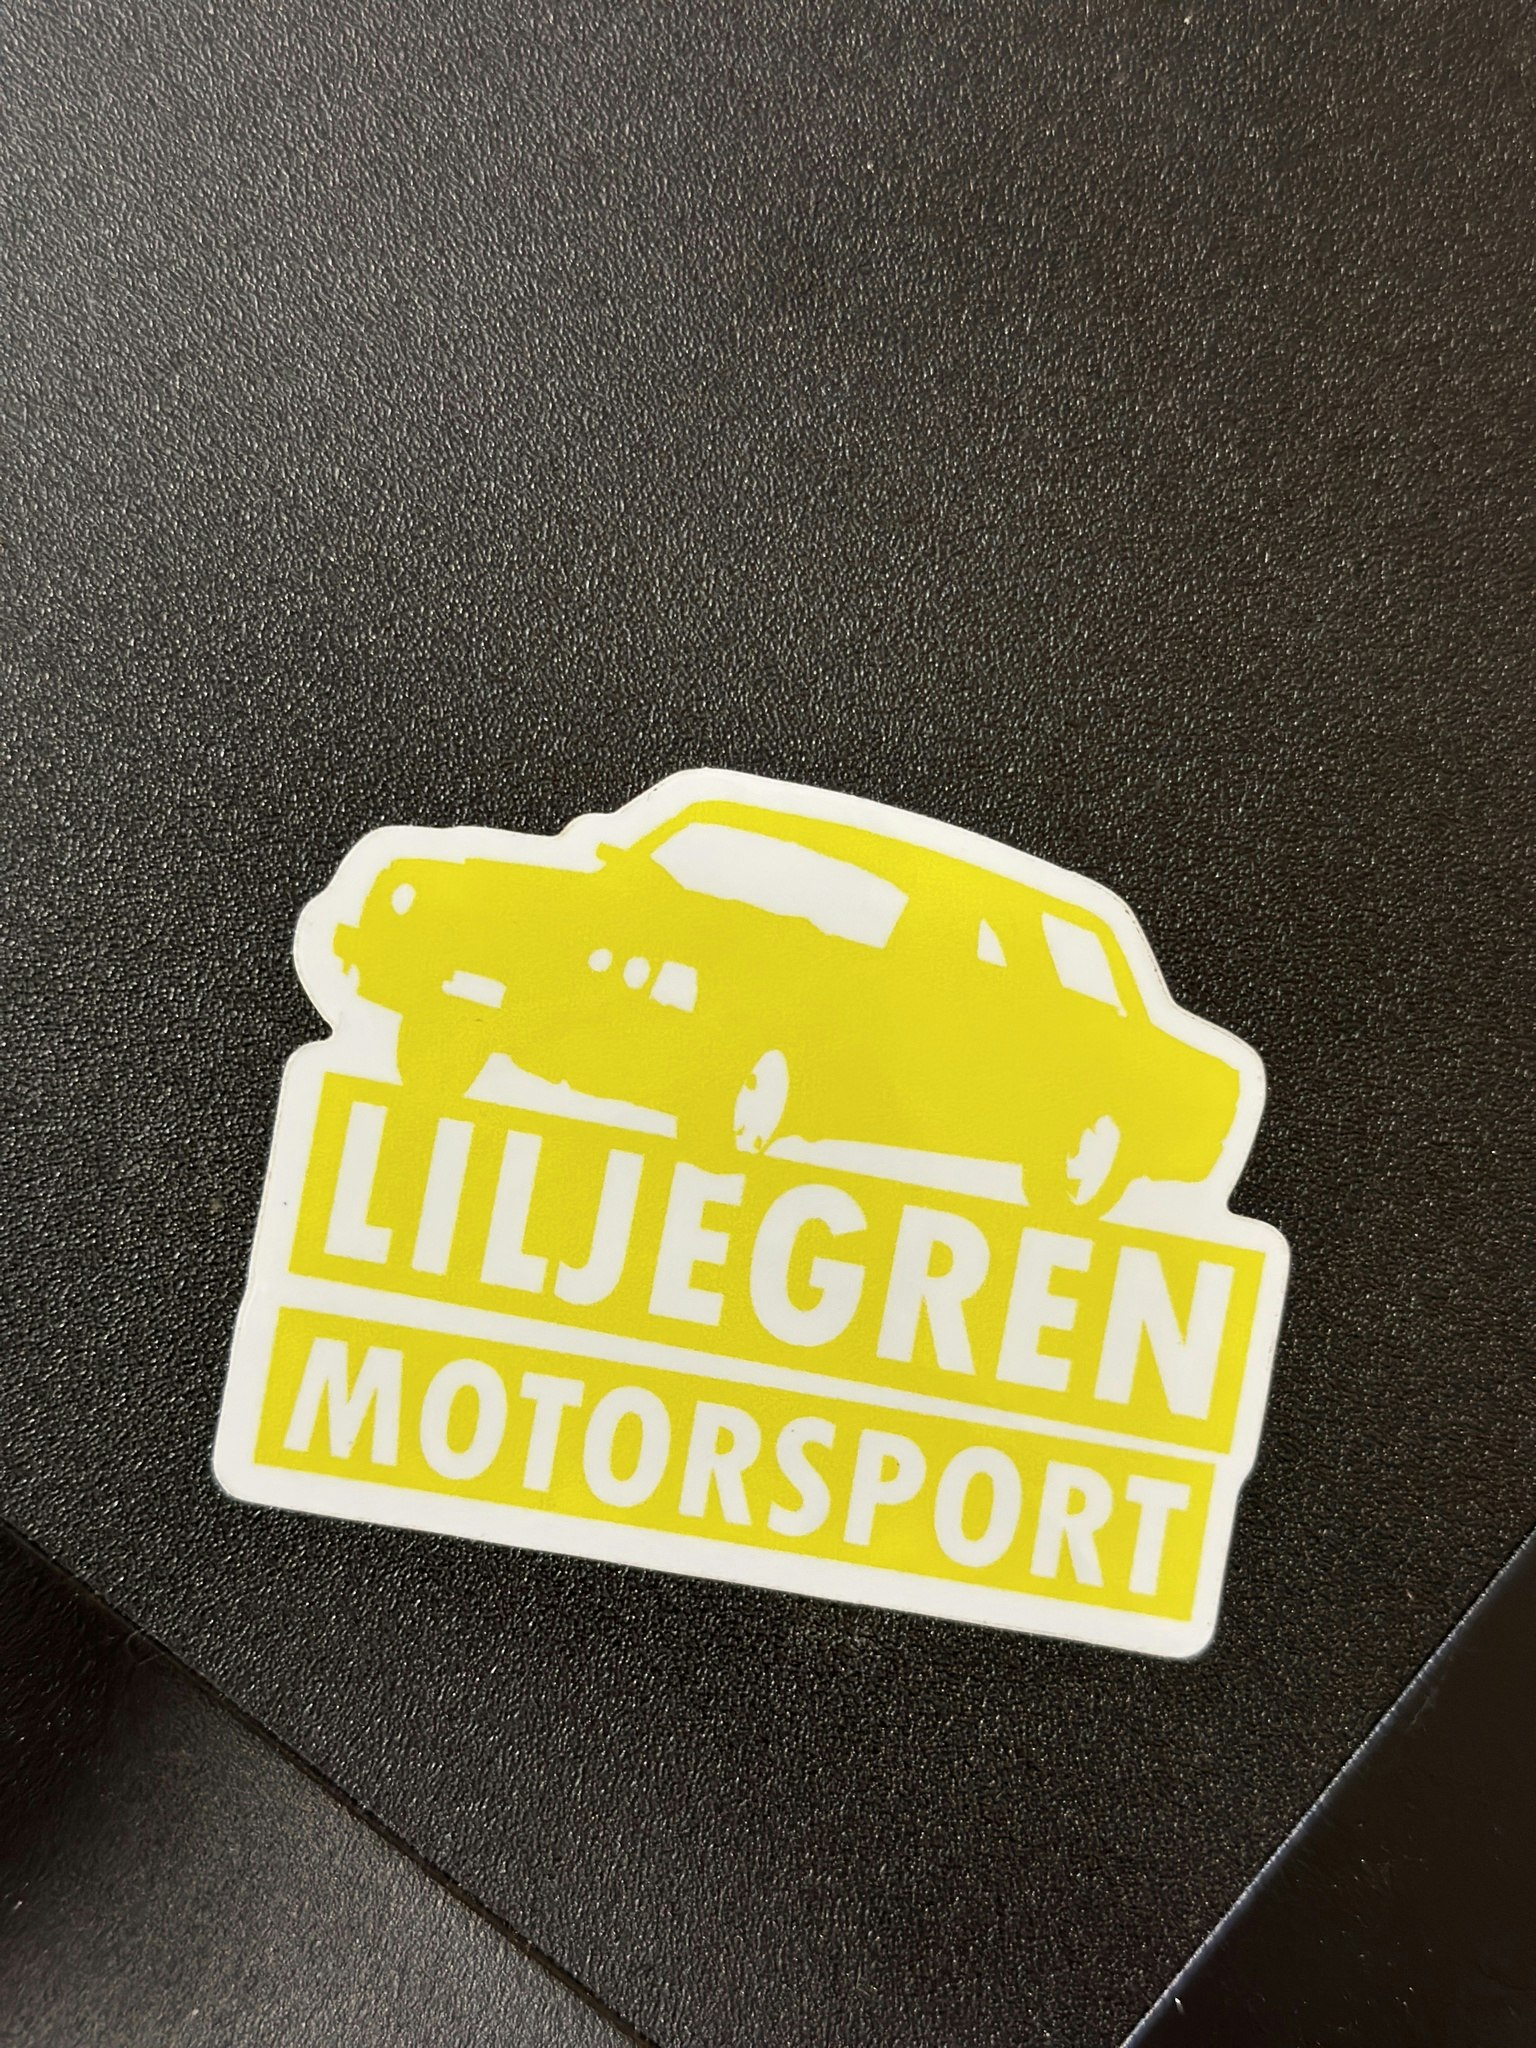 Dekal 240 Liljegren Motorsport